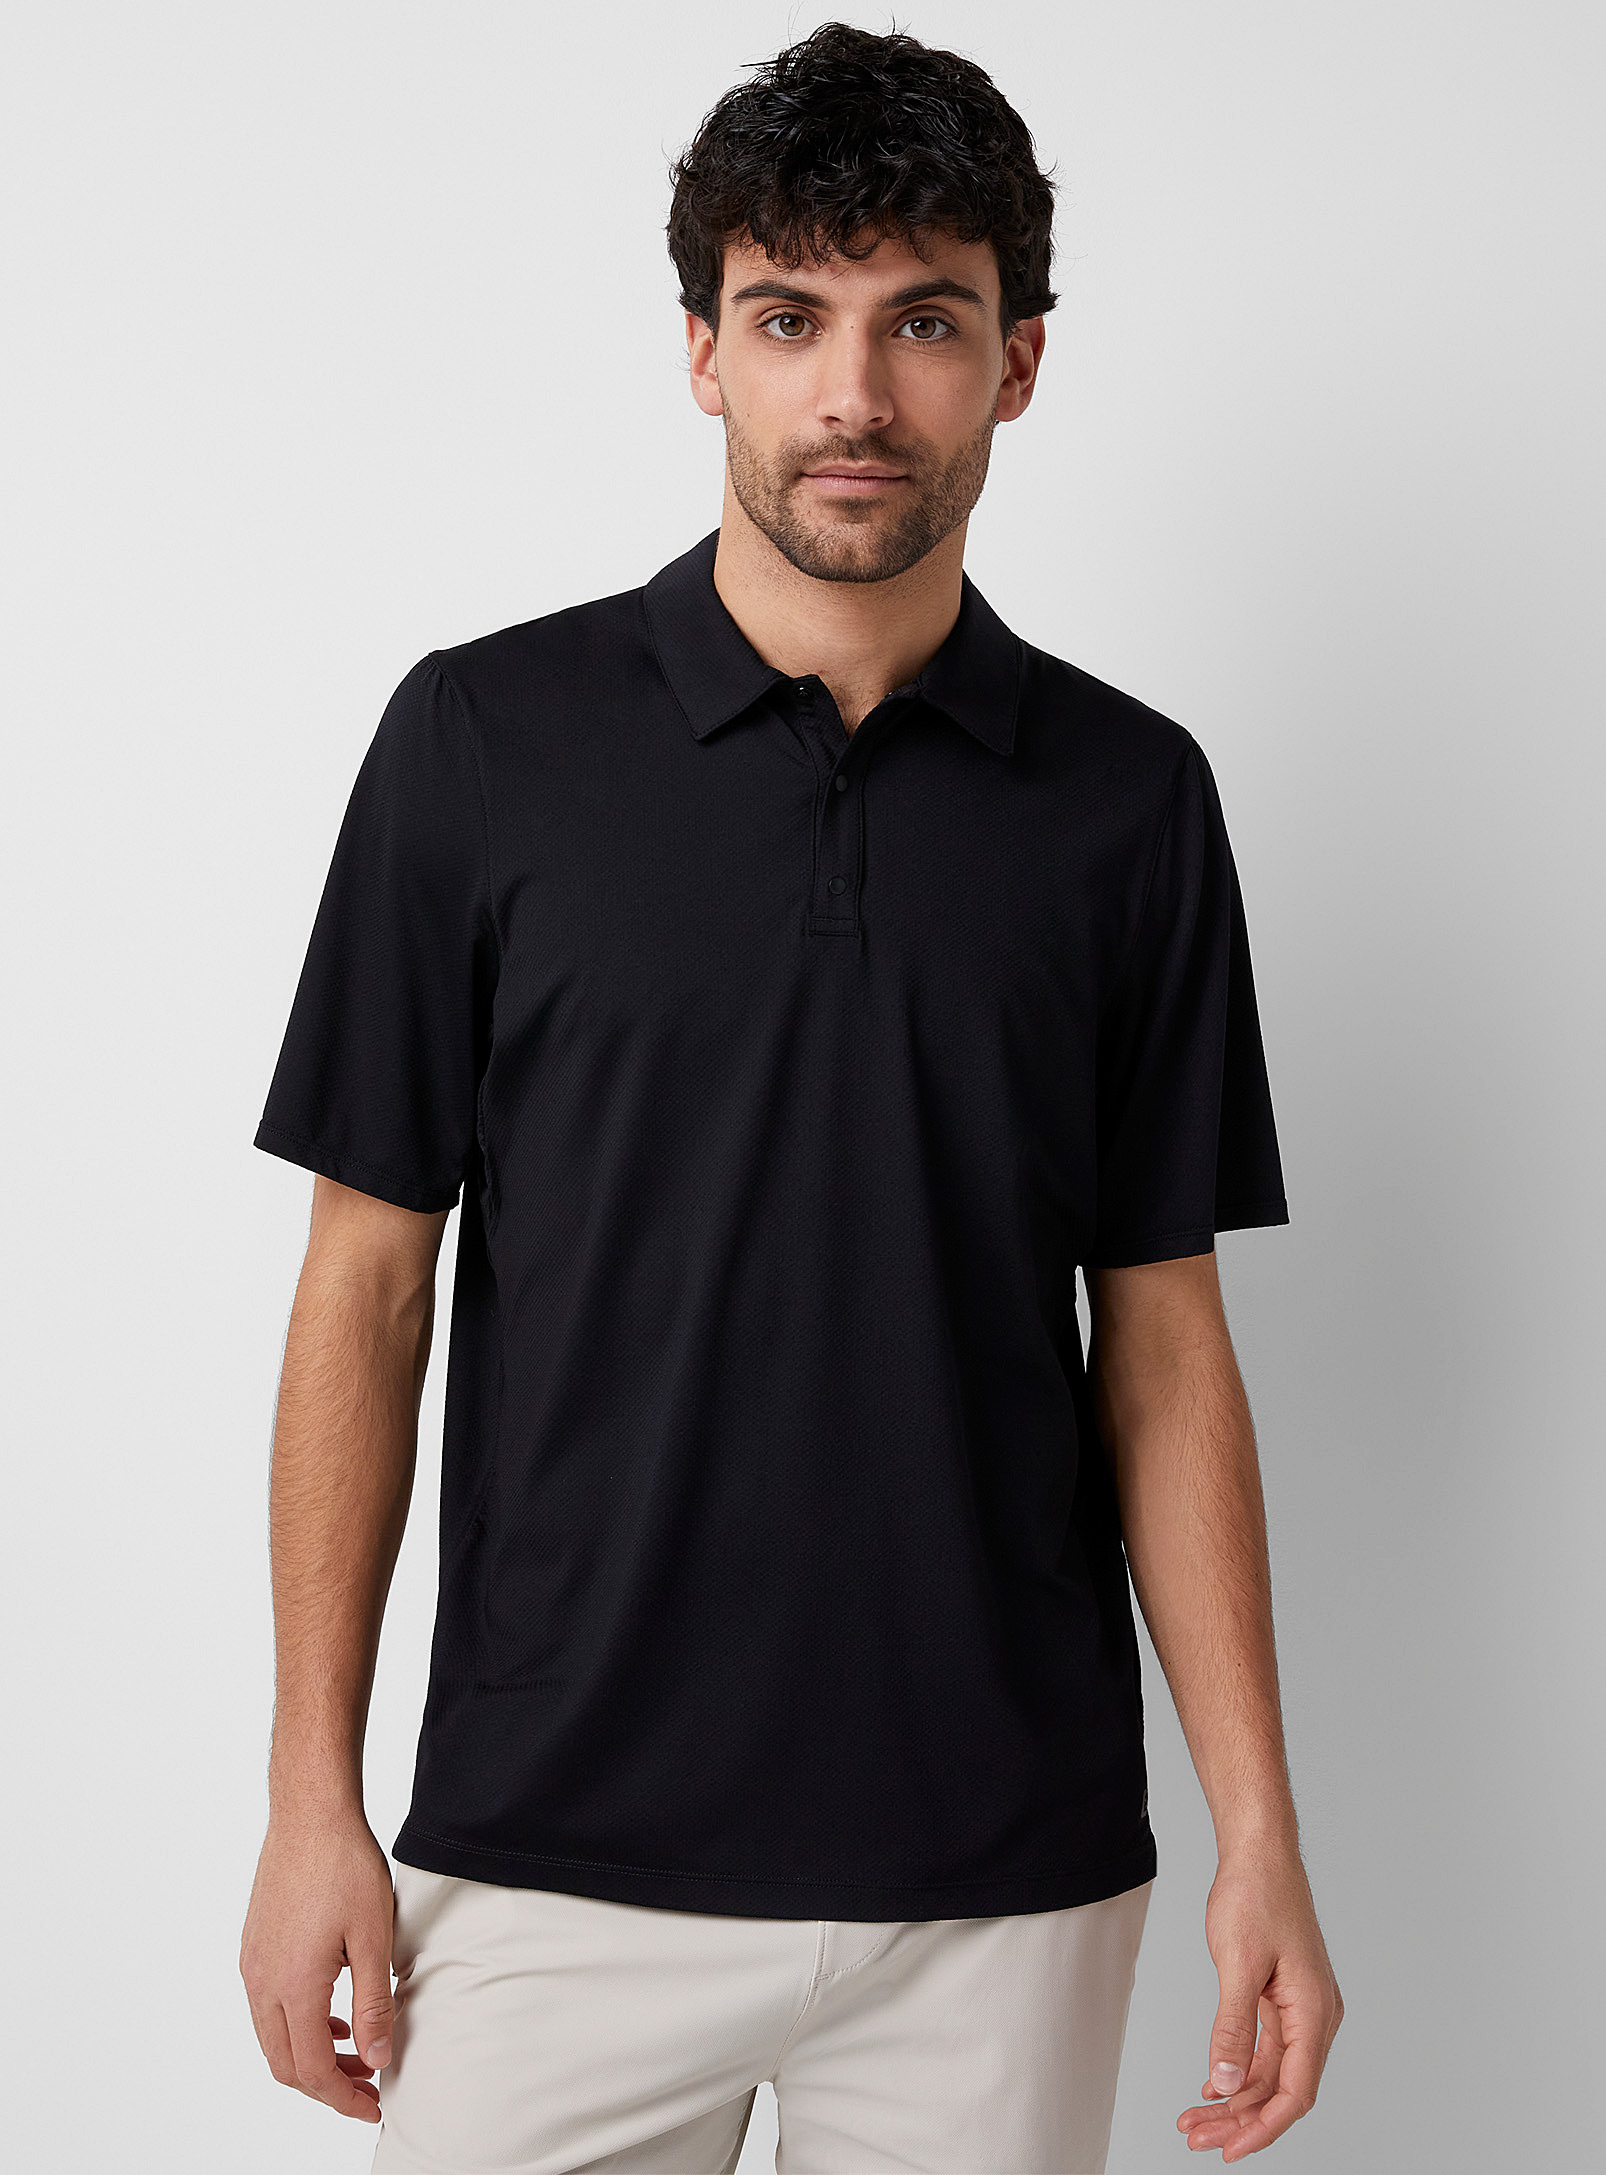 I.FIV5 - Men's Piqué-style microfibre golf Polo Shirt